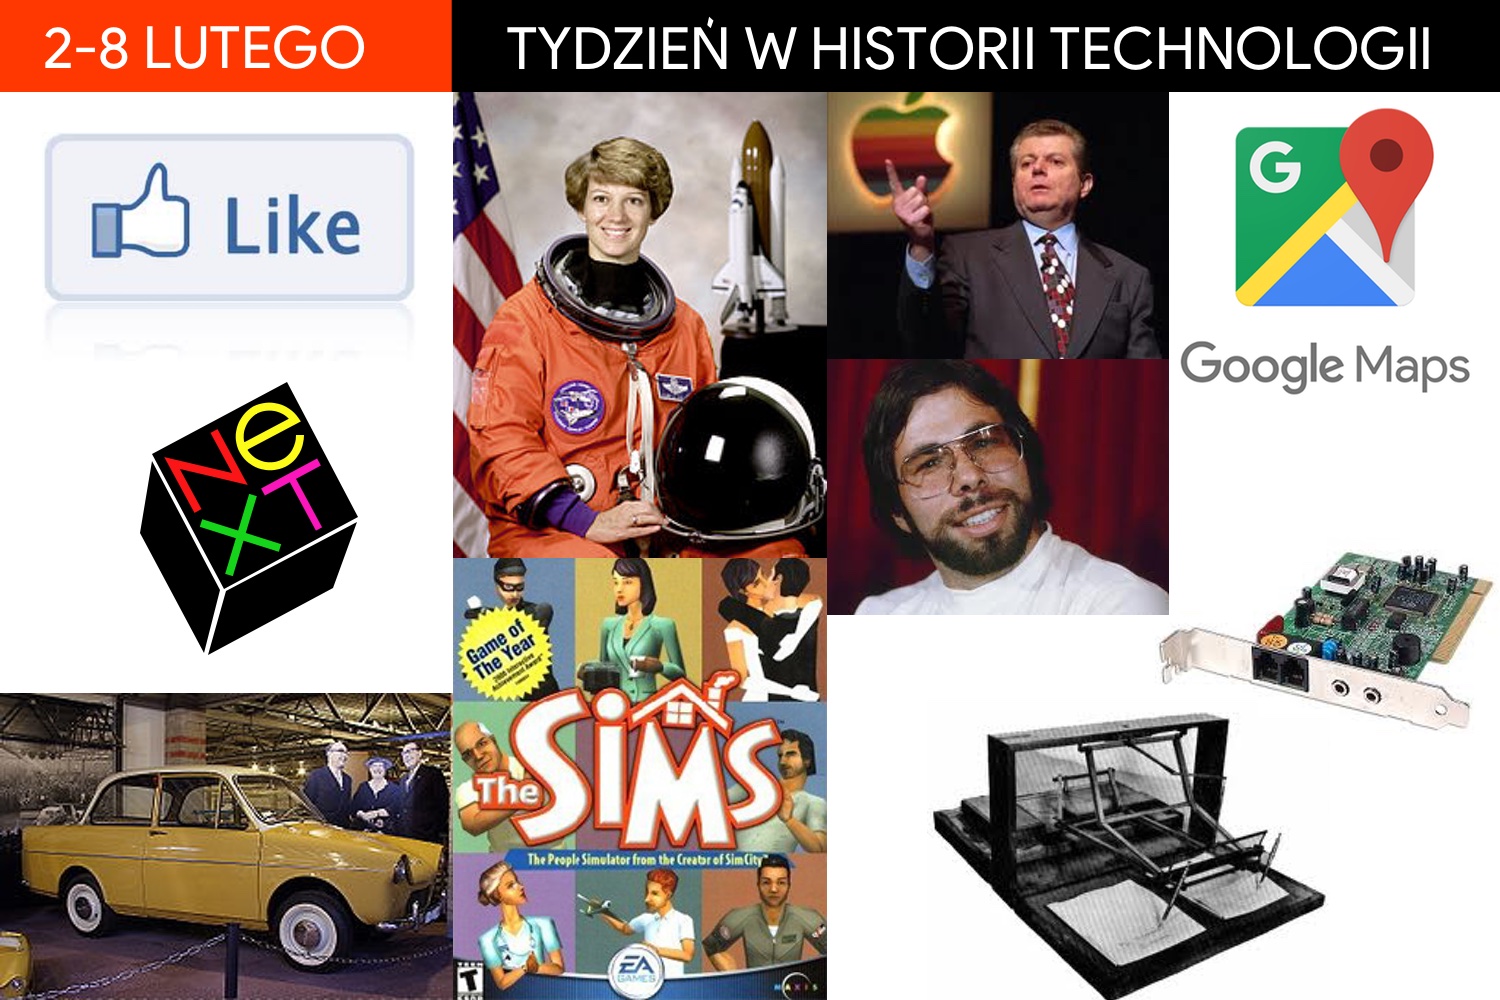 2-8 lutego: Tydzień w historii technologii